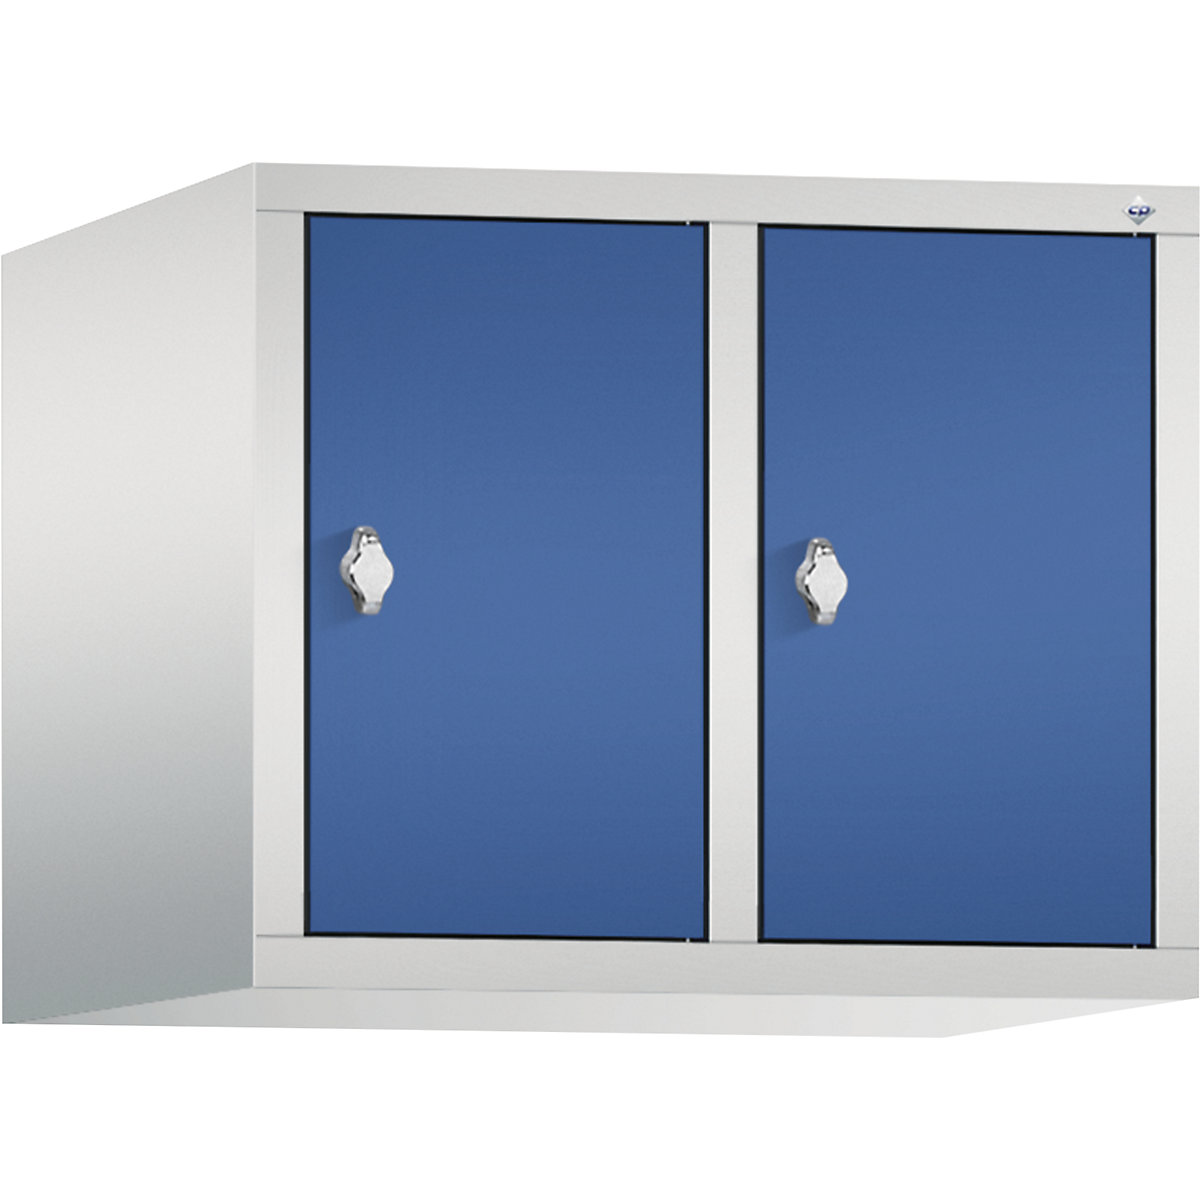 Altillo CLASSIC – C+P, 2 compartimentos, anchura de compartimento 300 mm, gris luminoso / azul genciana-11